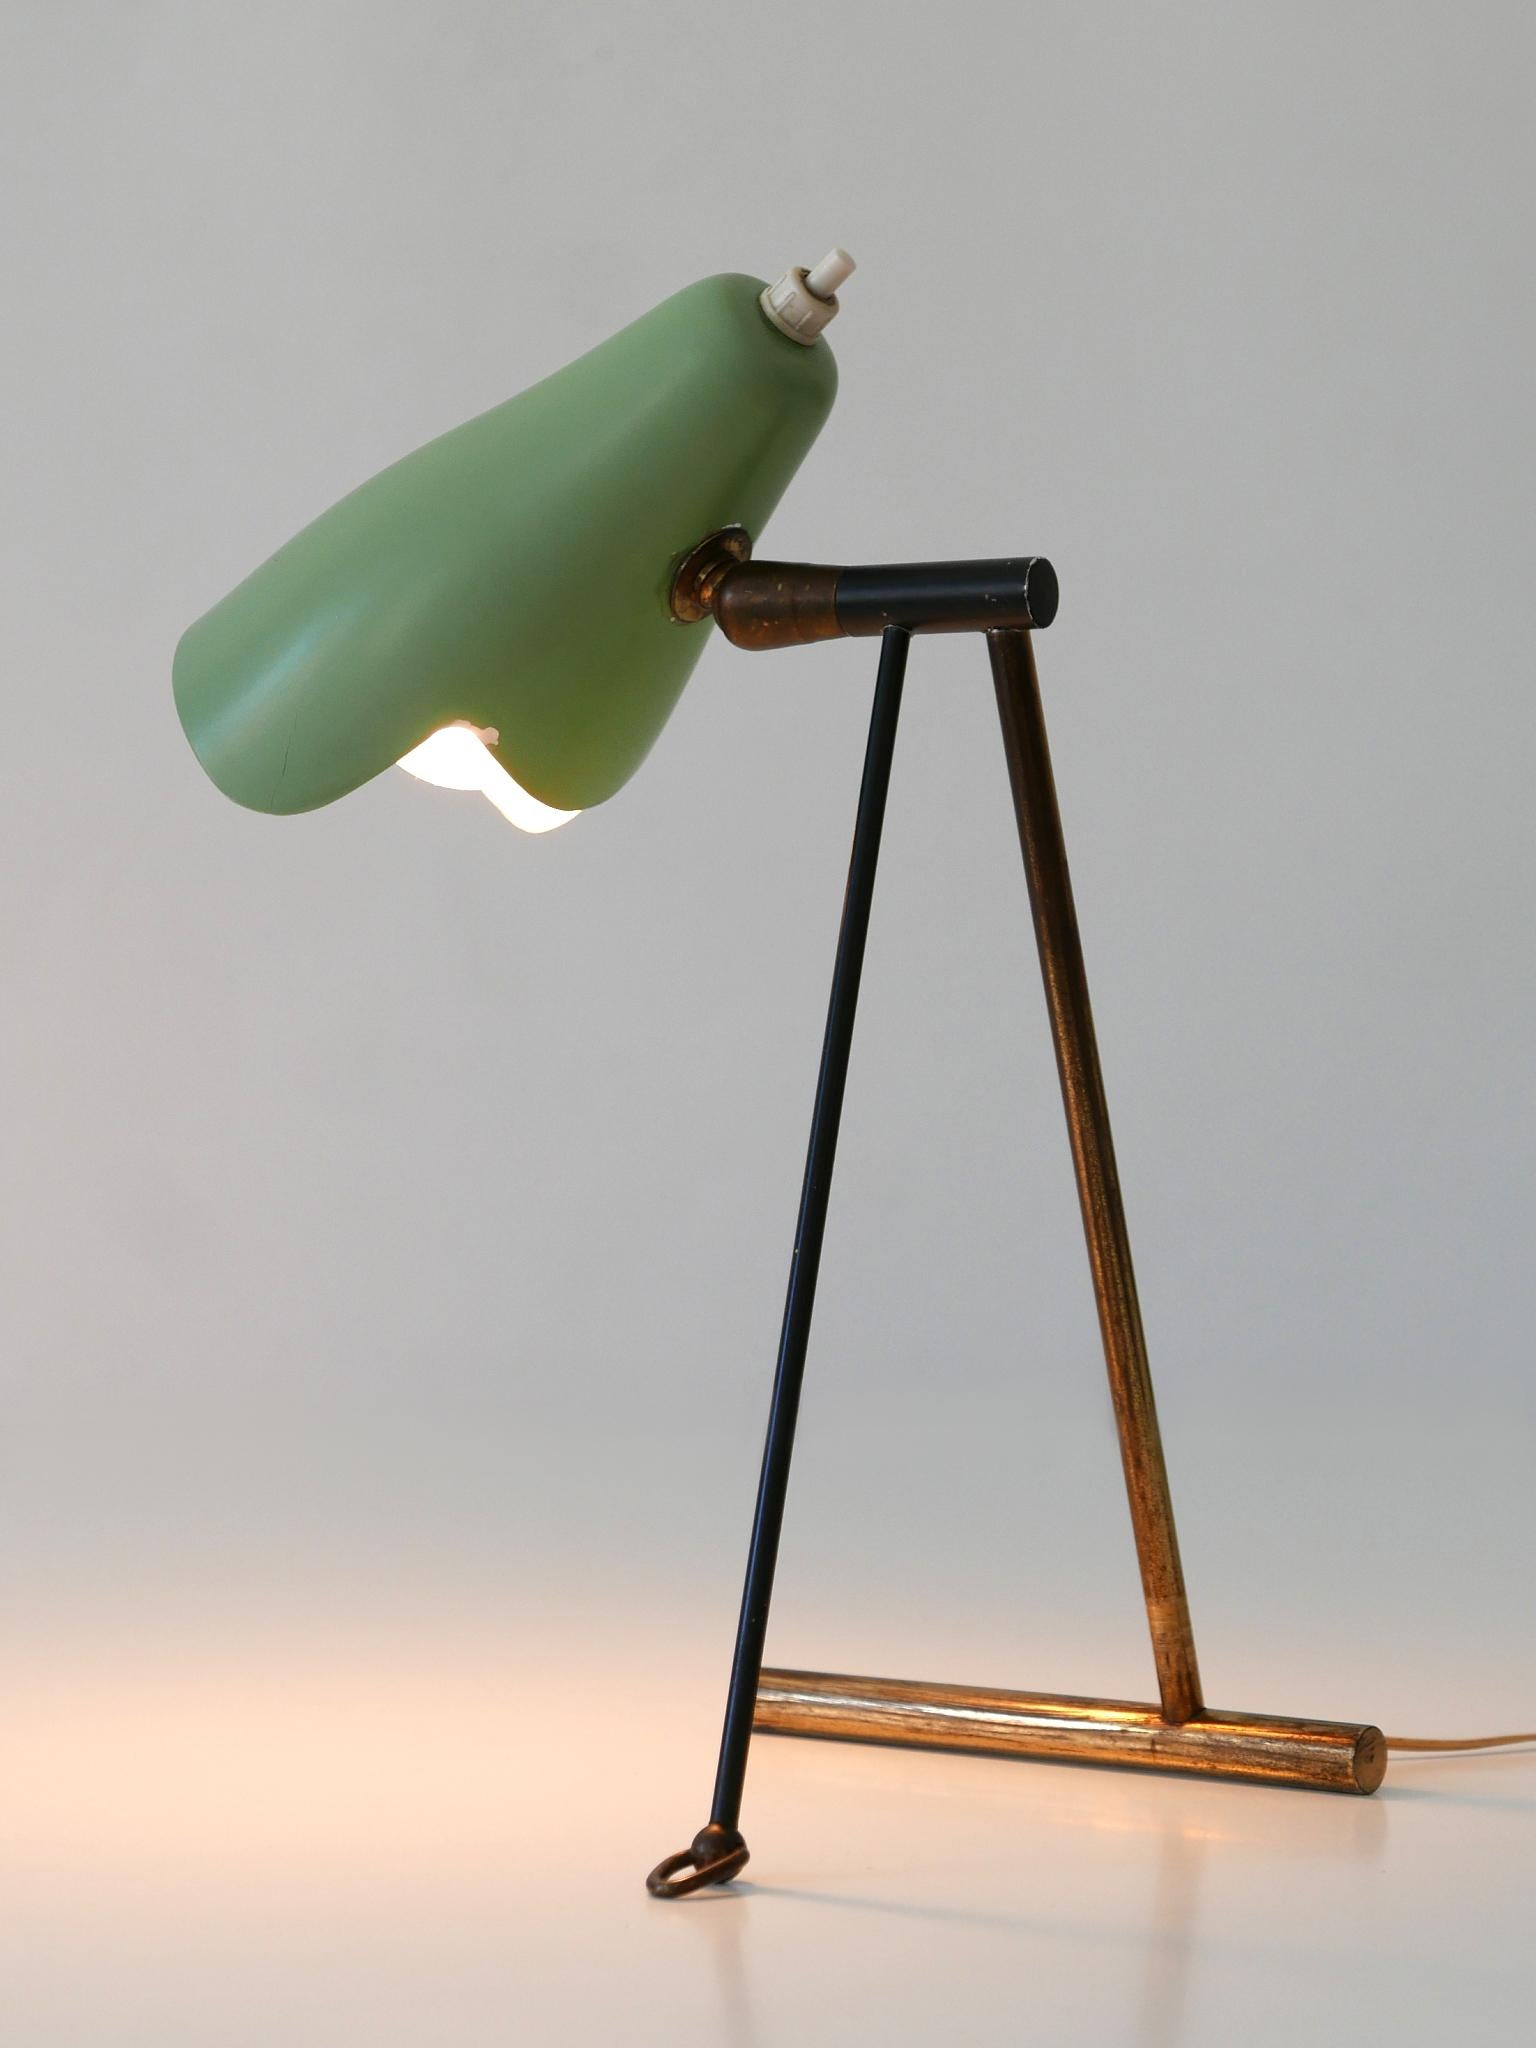 Extrêmement rare et élégante lampe de table/applique moderne du milieu du siècle par Stilnovo, Itlay, 1950. Avec diffuseur réglable en couleur verte originale. 

Réalisée en laiton et en aluminium peint, cette lampe de table/applique est livrée